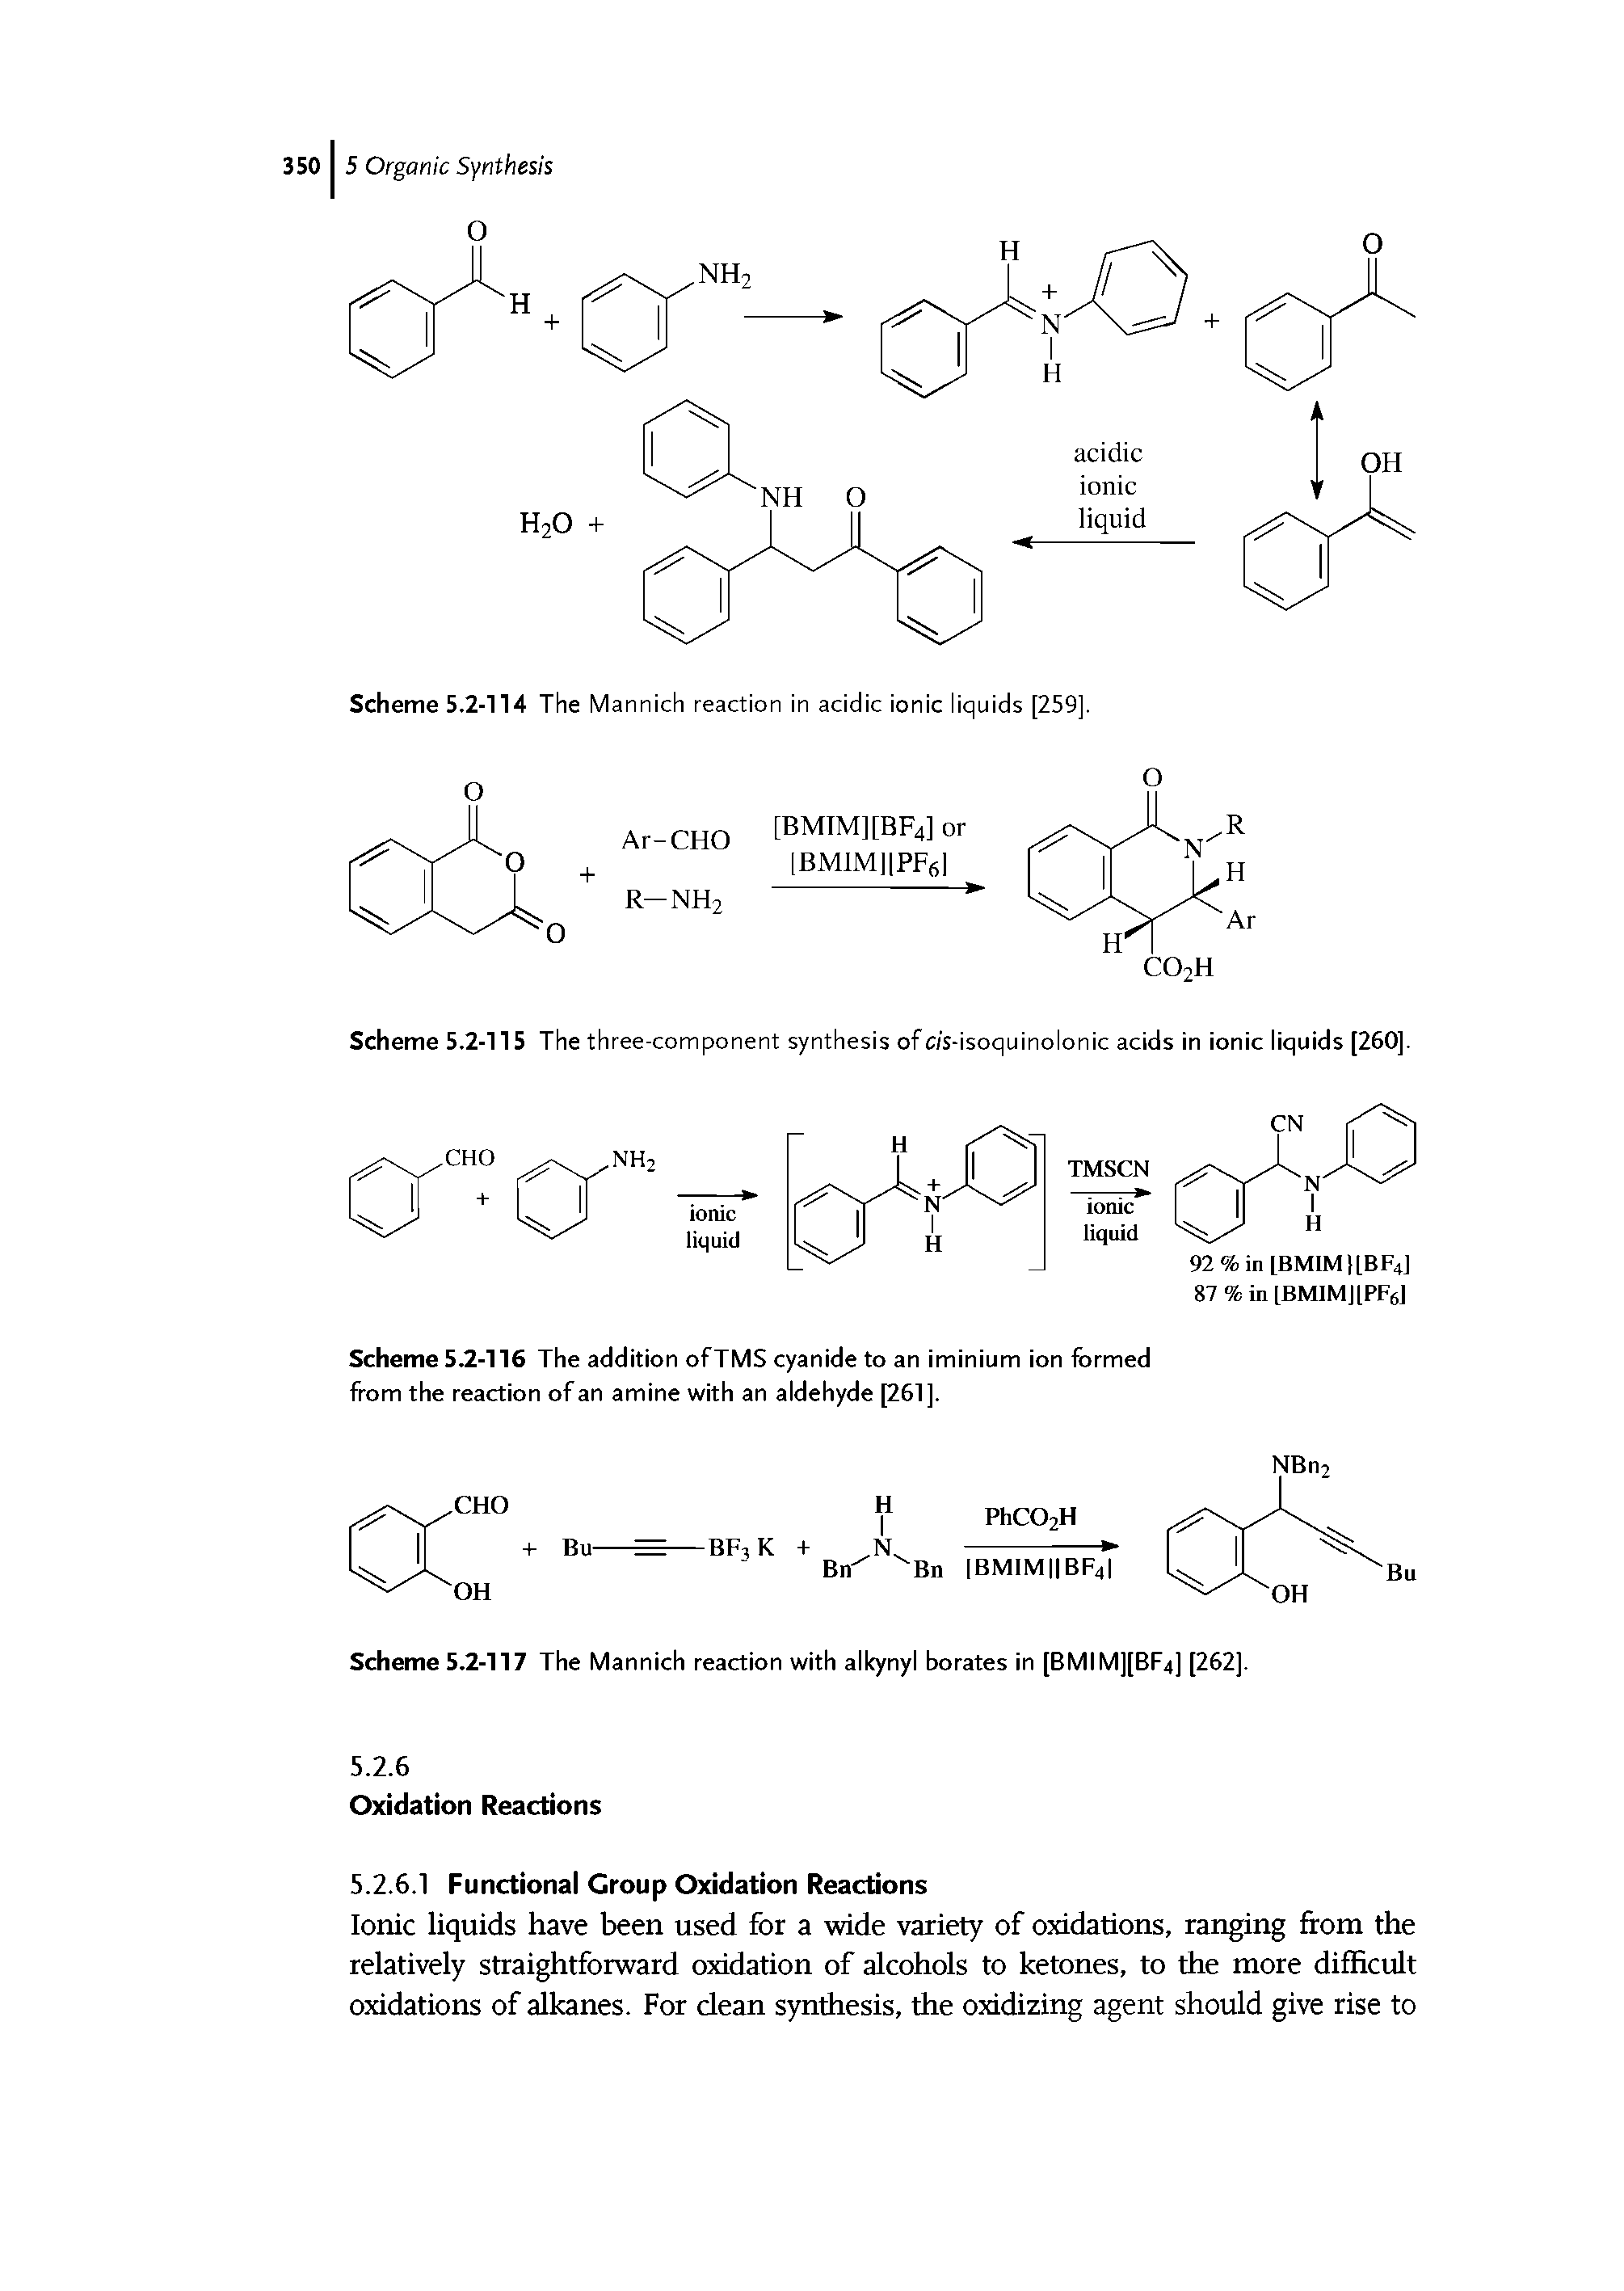 Scheme 5.2-117 The Mannich reaction with alkynyl borates in [BMIM][BF4] [262].